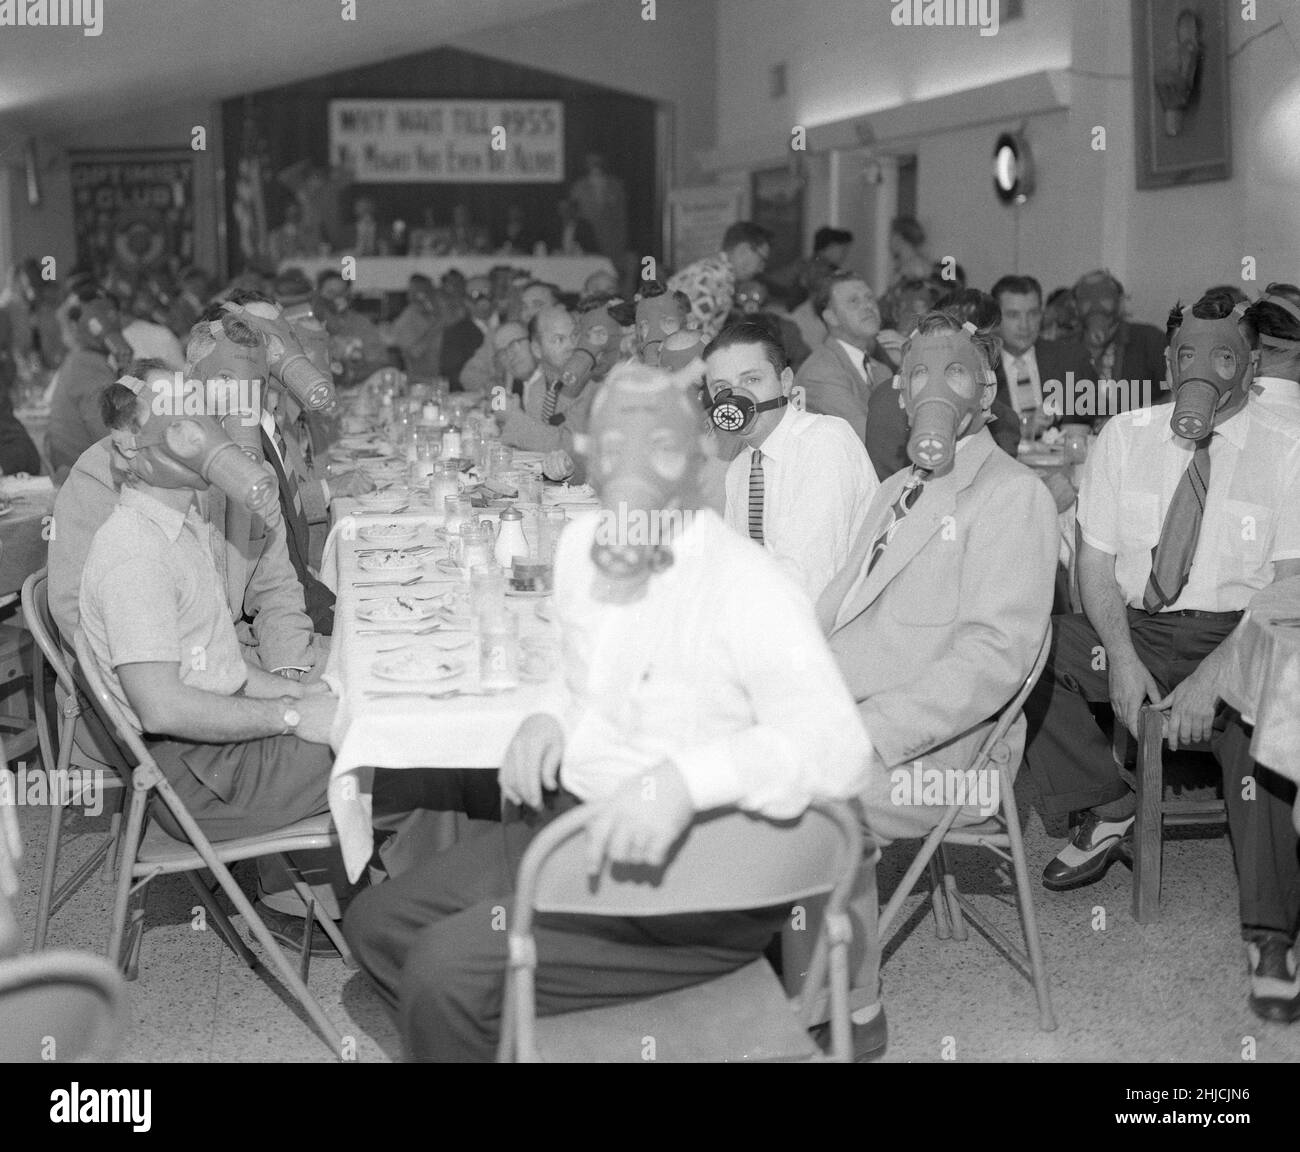 Highland Park Optimist Club usando máscaras de gas smog en el banquete, alrededor de 1954. Noreste de Los Ángeles, Sur de California. Foto de stock